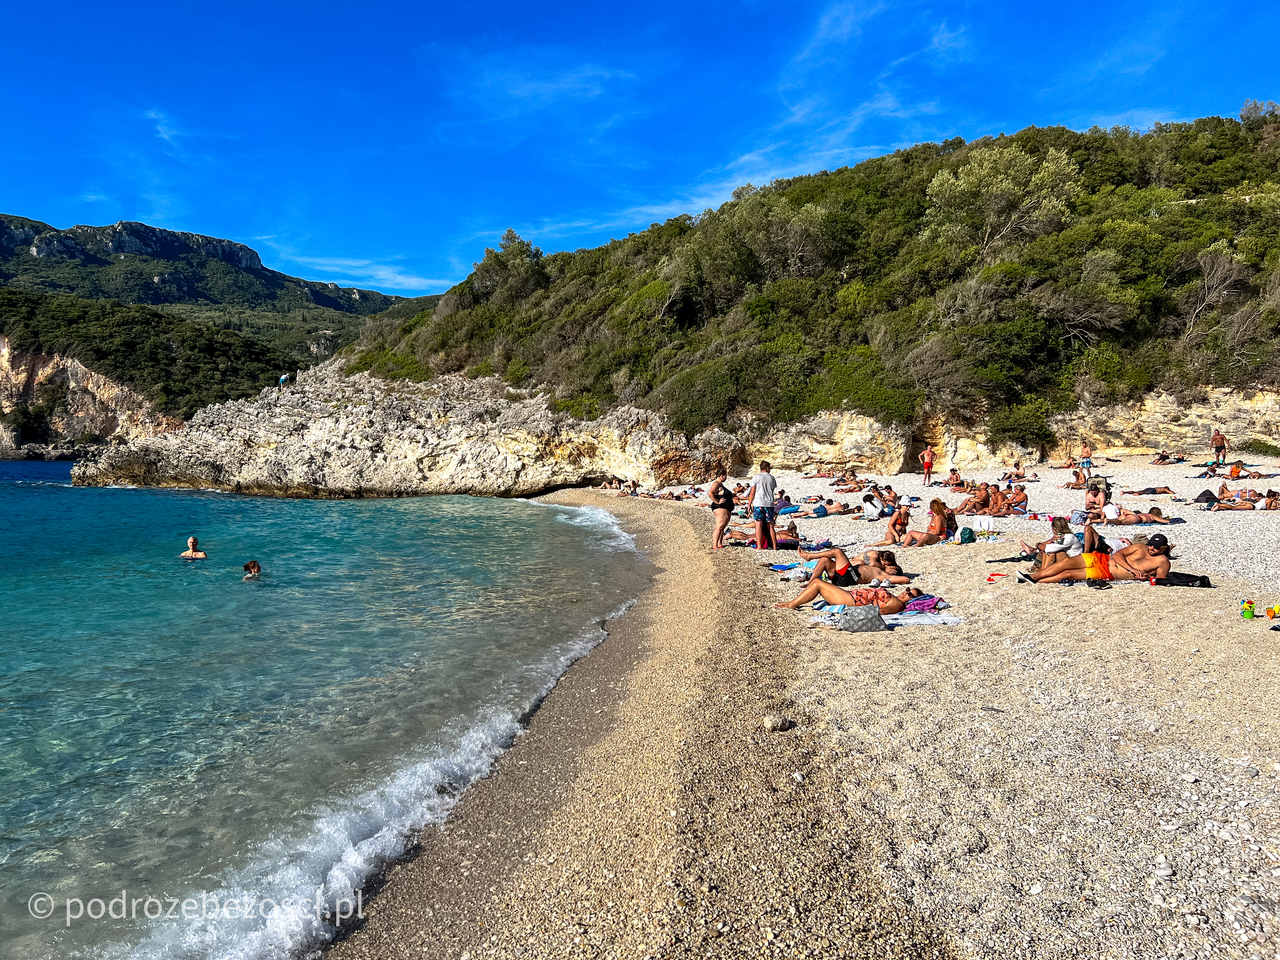 rovinia najpiekniejsze-plaze-na-korfu-grecja-plaza-piaszczysta-gdzie-warto-plazowac-jak-wygladaja-plaze-na-korfu-mapa-top-10-beaches-corfu-greece